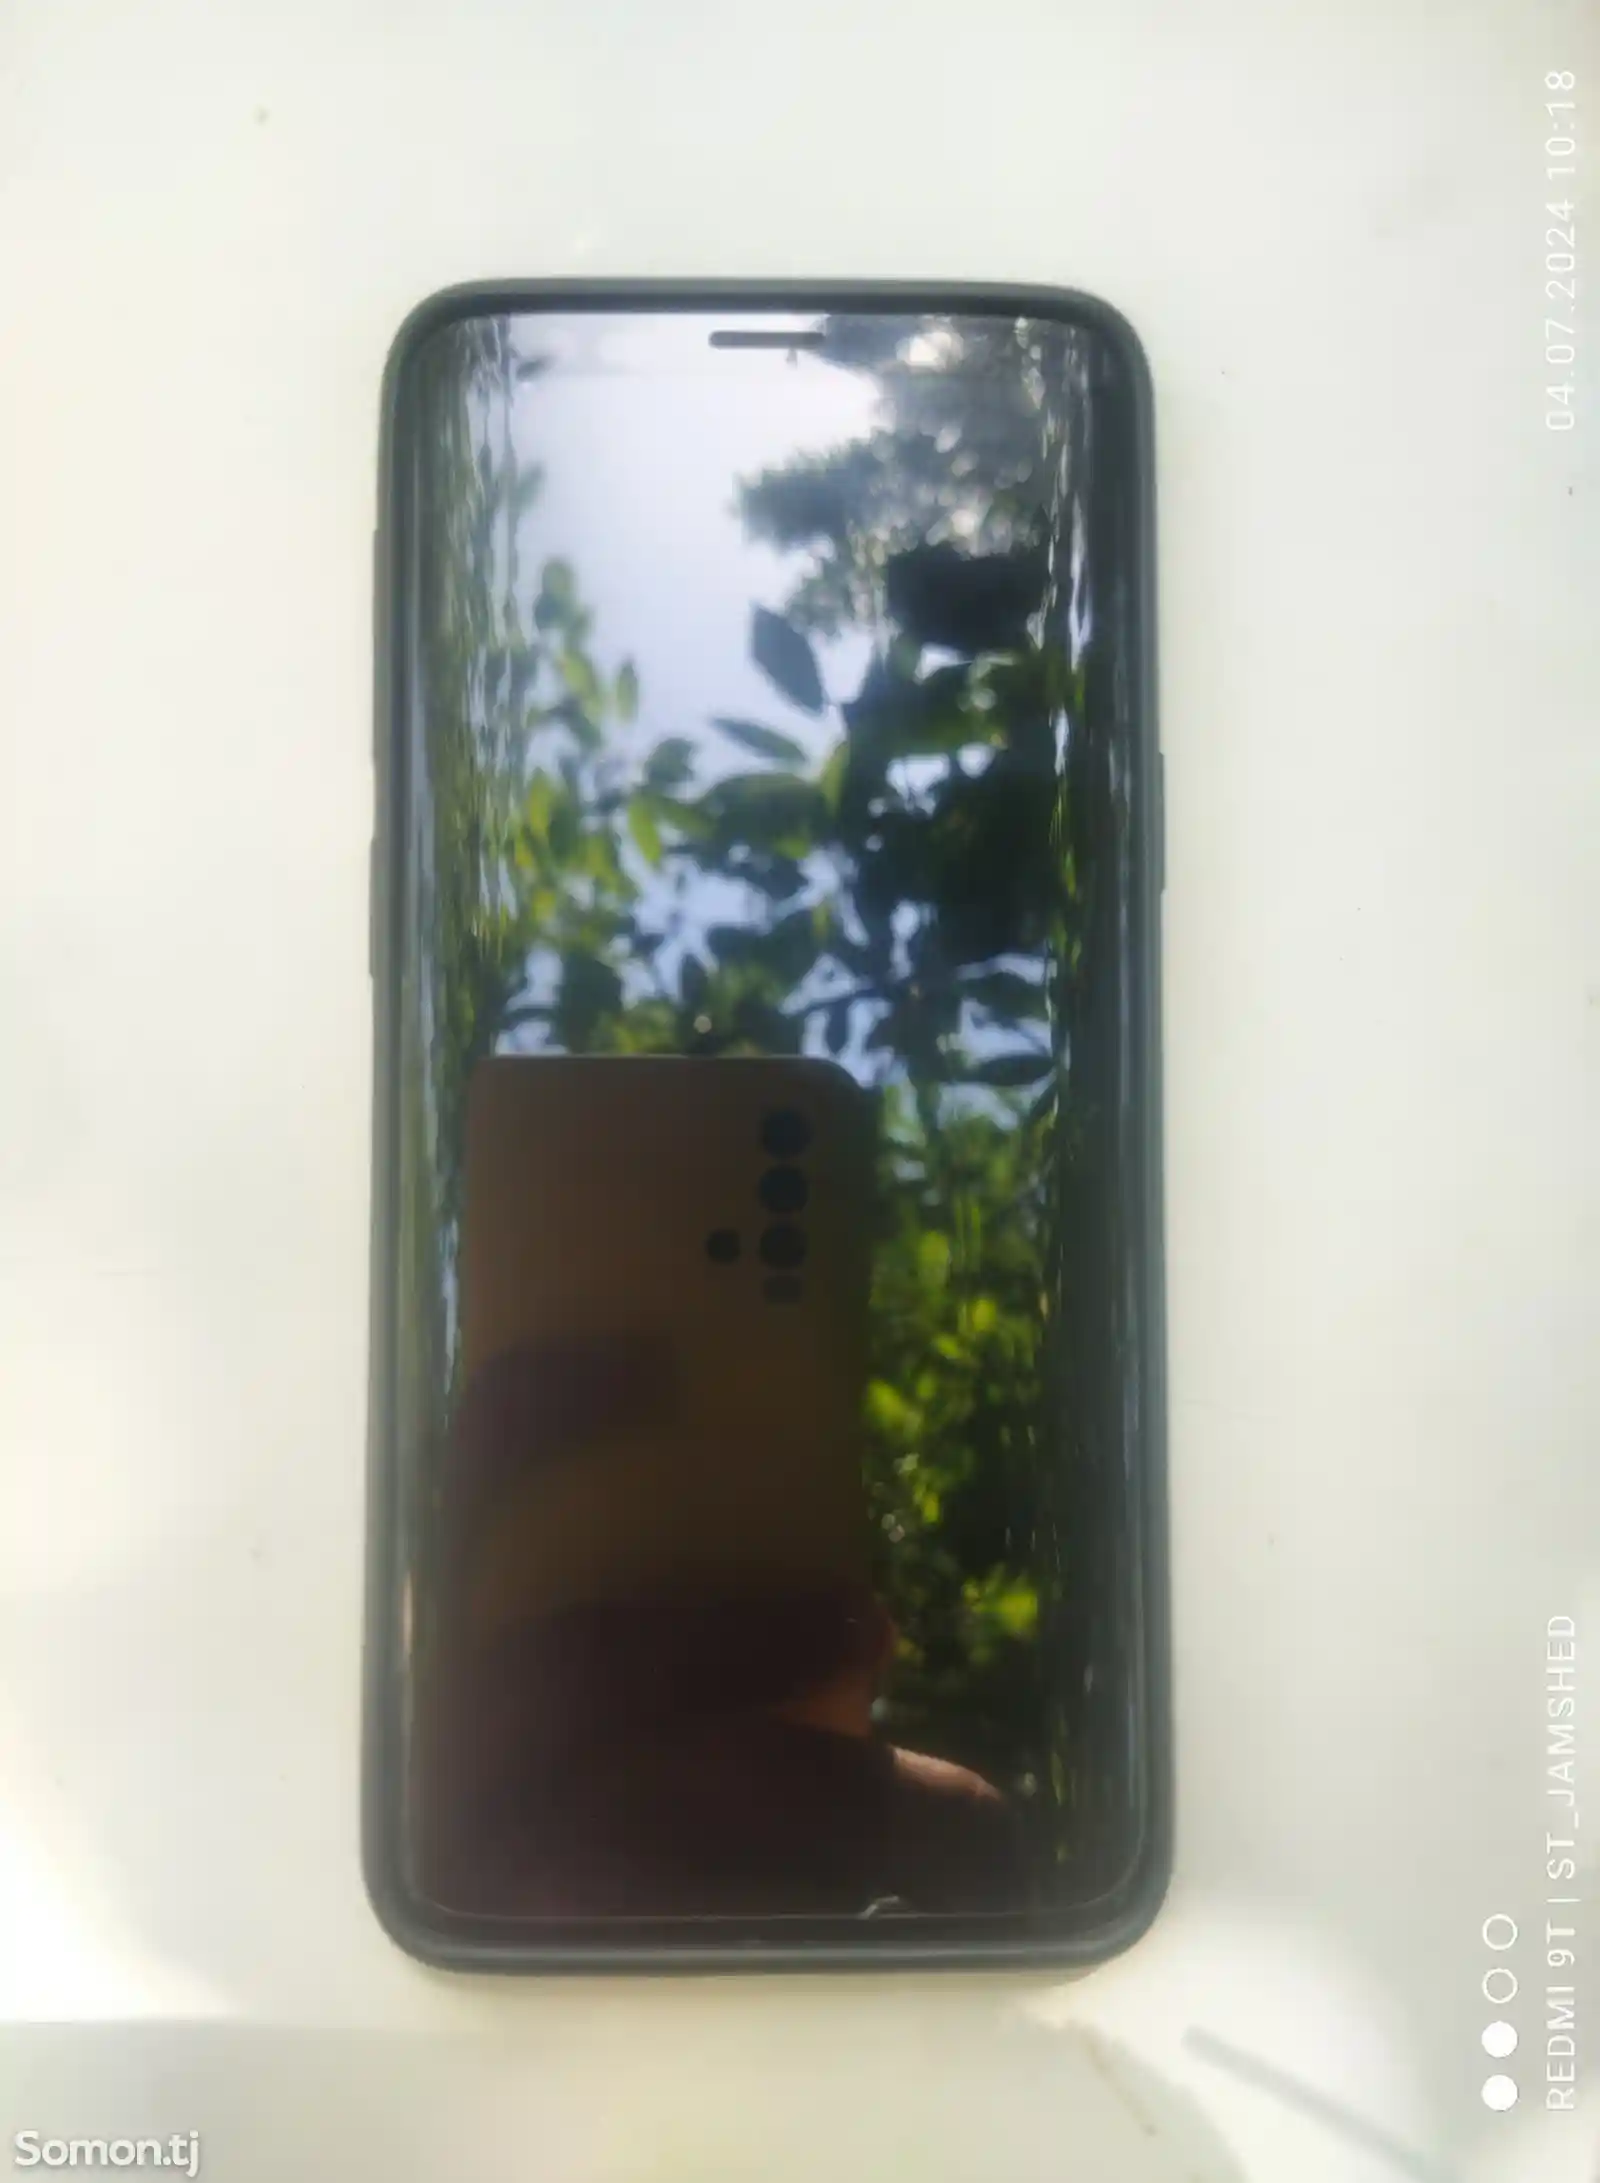 Sasmung Galaxy S9-3